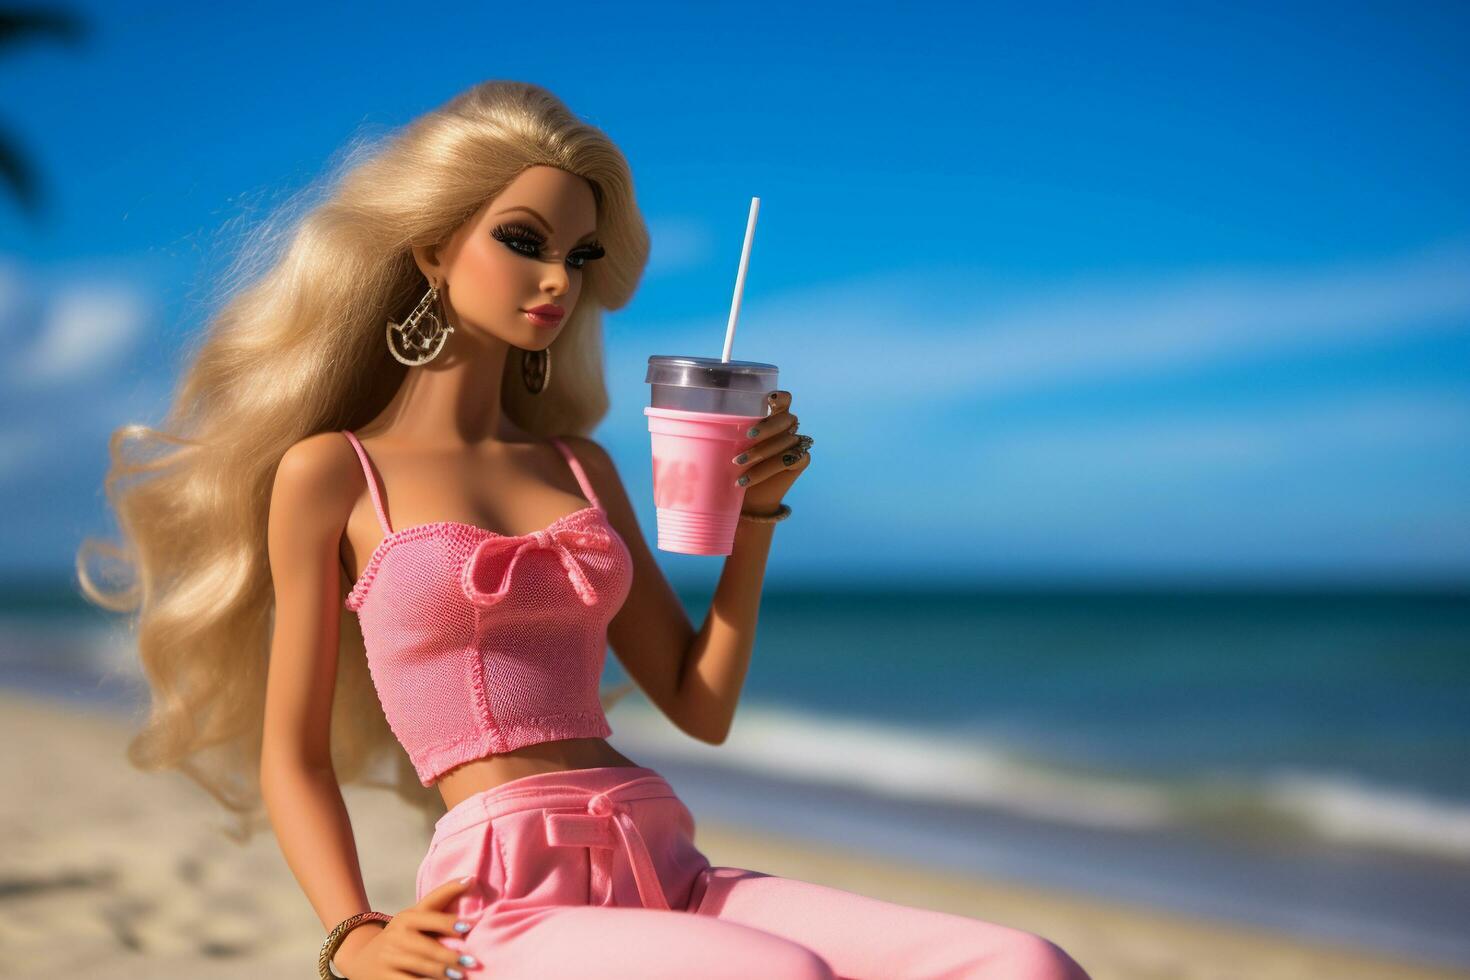 une Barbie poupée séance sur le plage avec une boisson photo